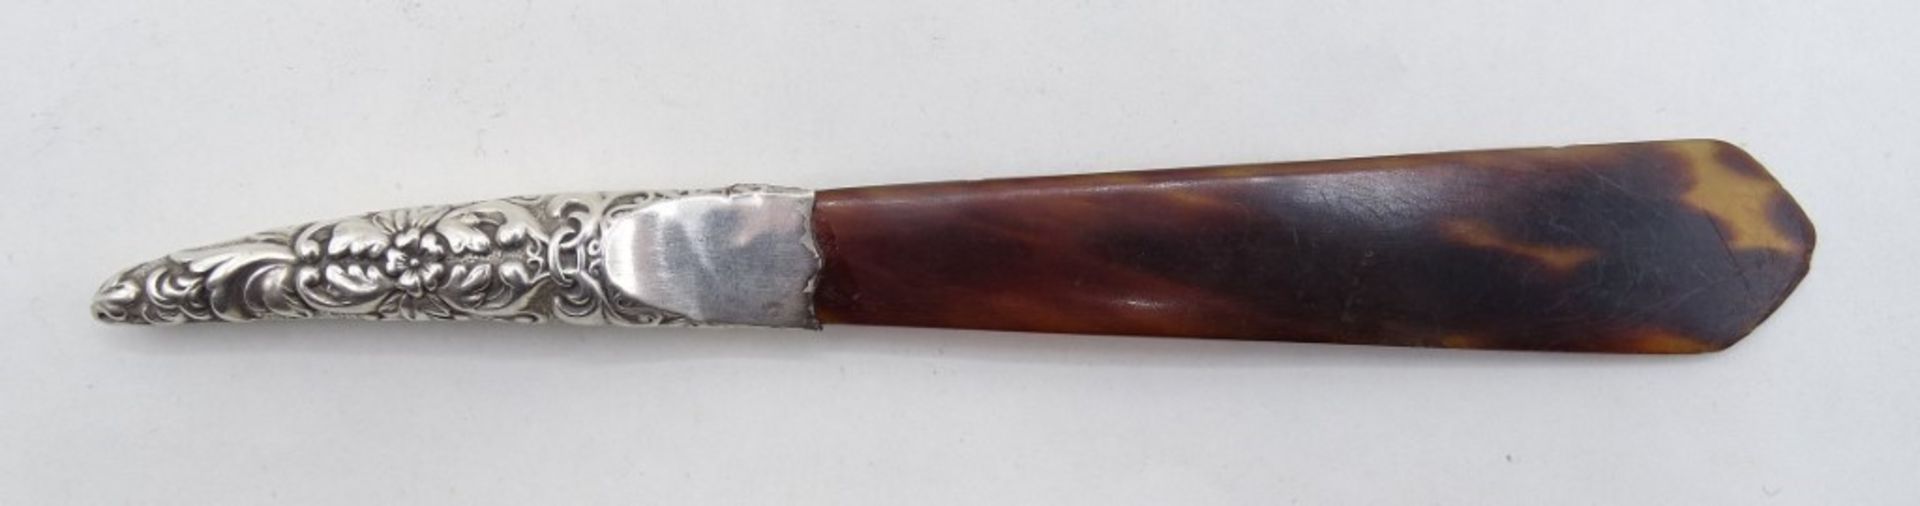 Brieföffner, Hornimitat mit Silbergriff (gepr.), Punze nicht mehr lesbar, L. 14,5 cm, 6 gr., mit Al - Bild 2 aus 6